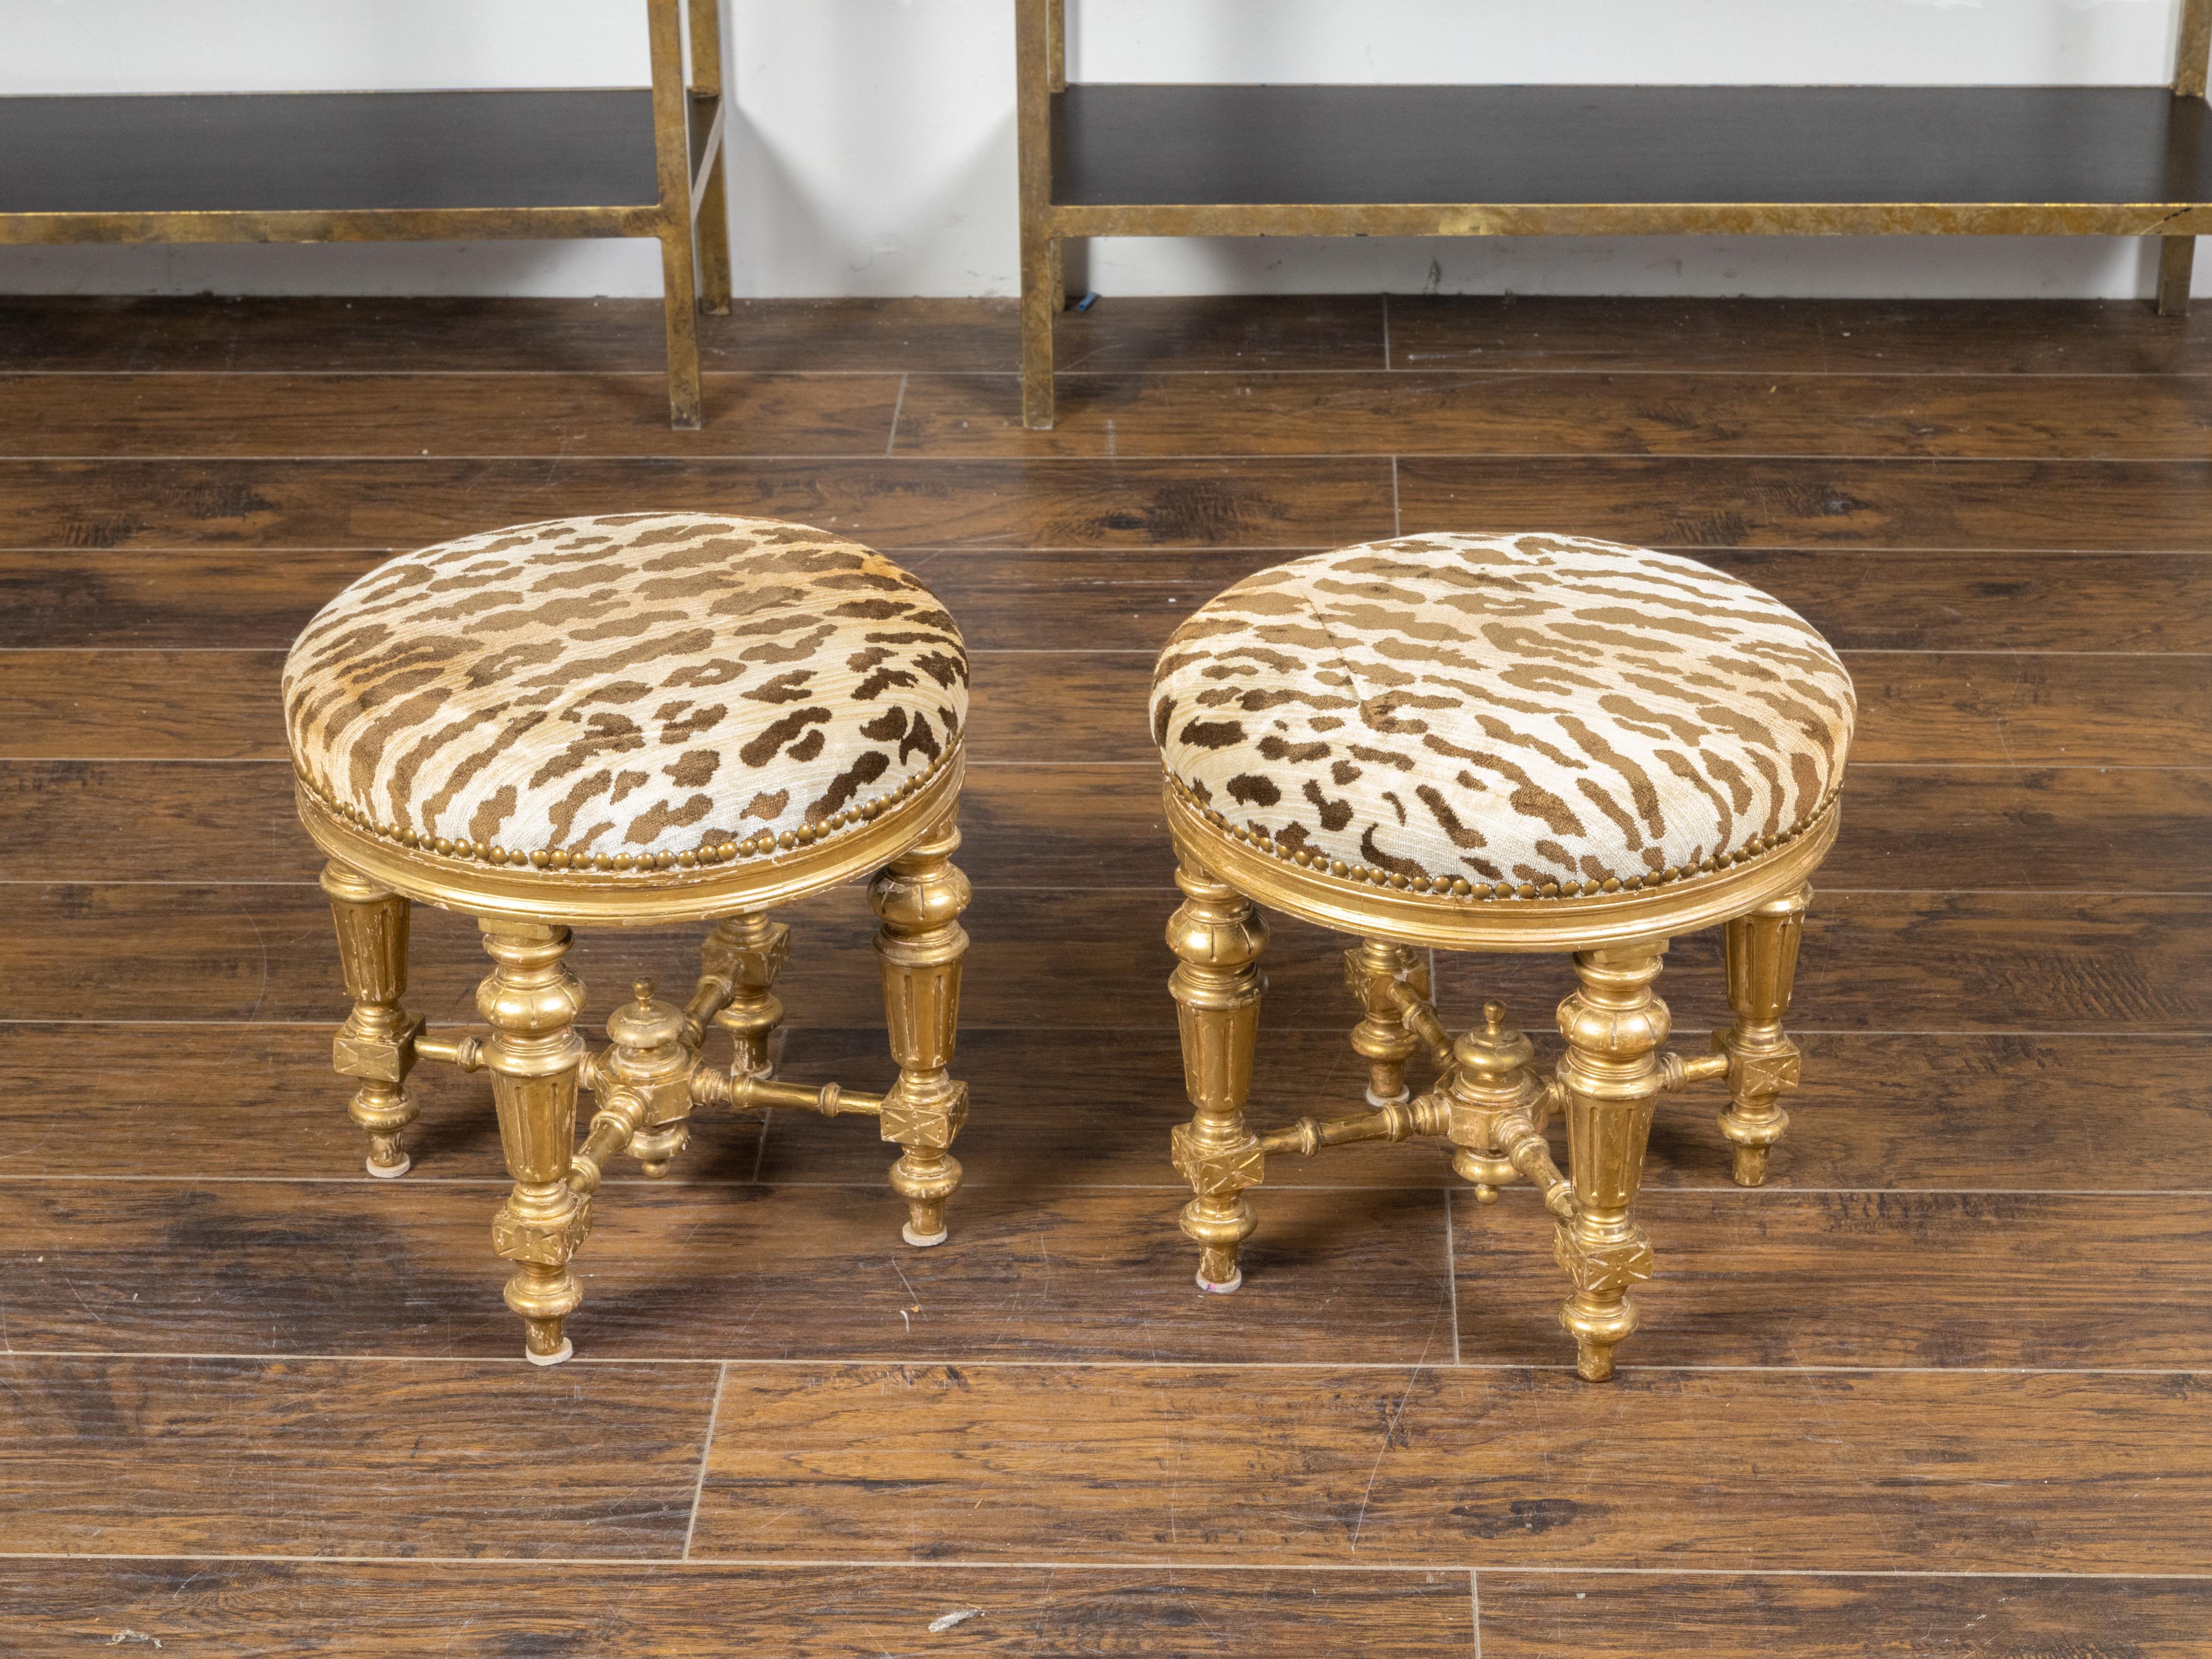 Ein Paar französischer Vergoldungshocker aus dem 19. Jahrhundert mit kannelierten Beinen, Kreuzstreben und Polsterung im Leopardenstil. Dieses Paar Hocker aus vergoldetem Holz wurde im 19. Jahrhundert in Frankreich hergestellt und verfügt über eine